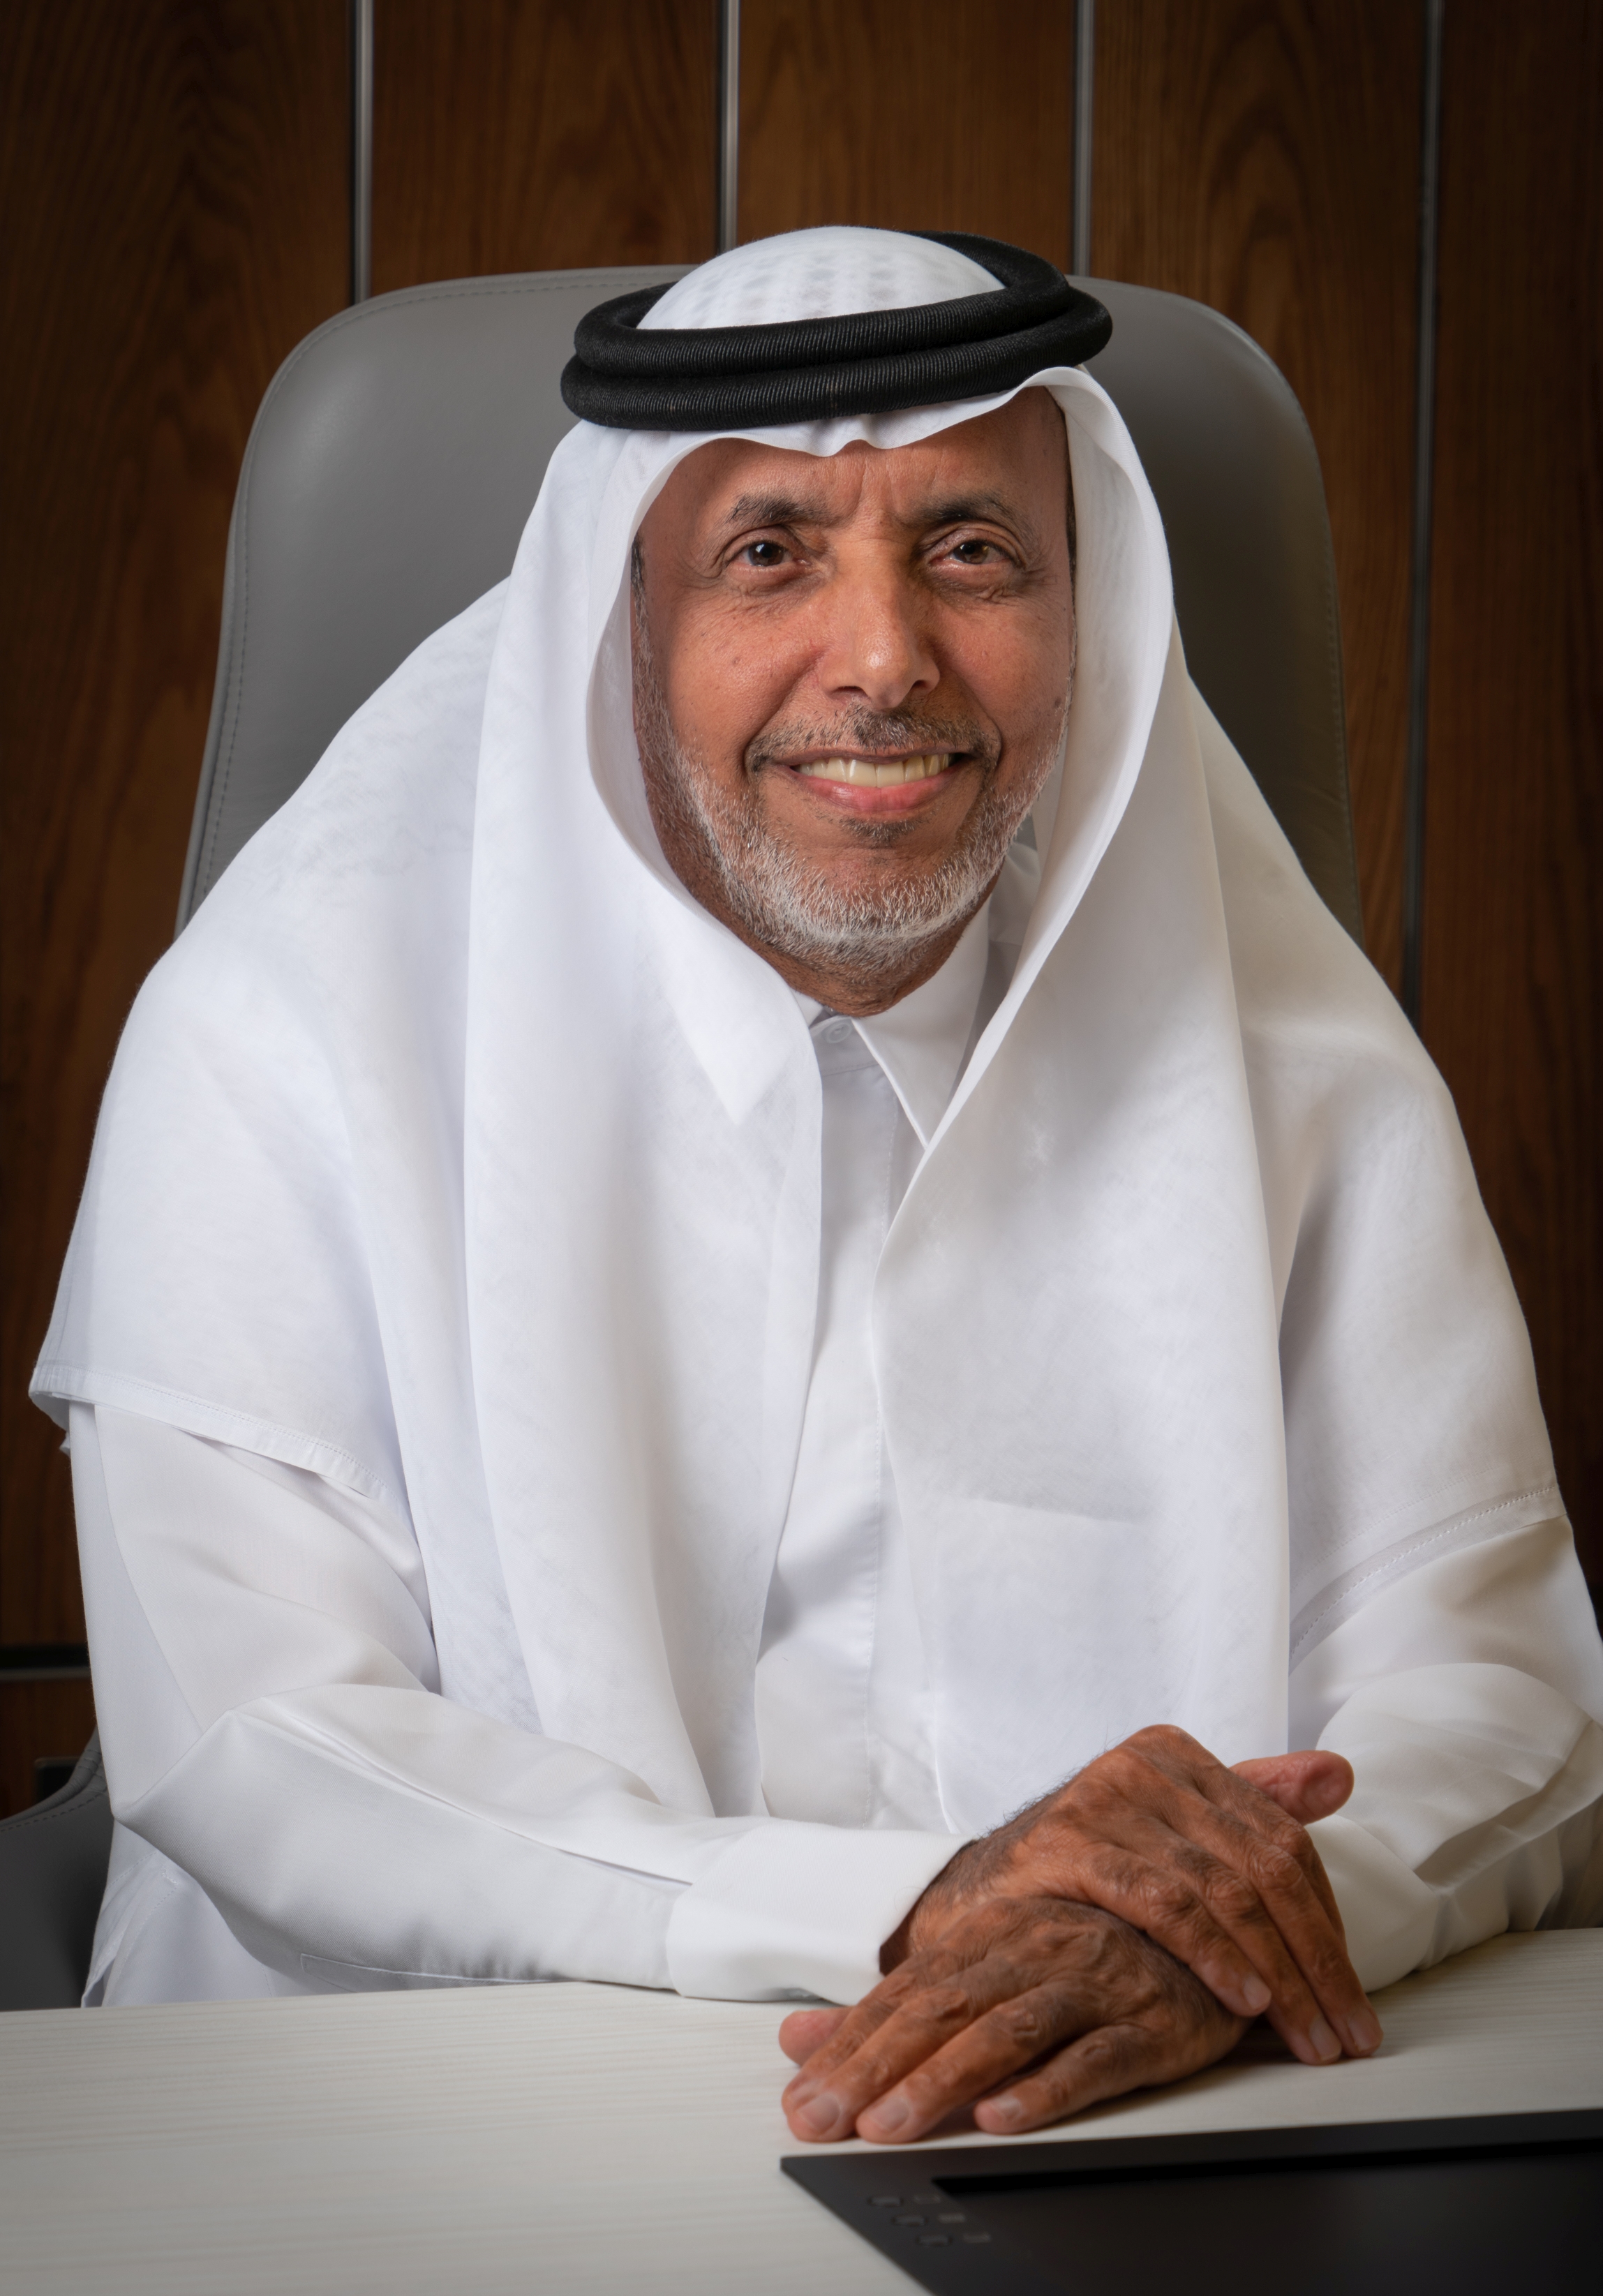 محمد سالم المزروعي، عضو مجلس إدارة مؤسسة مكتبة محمد بن راشد آل مكتوم